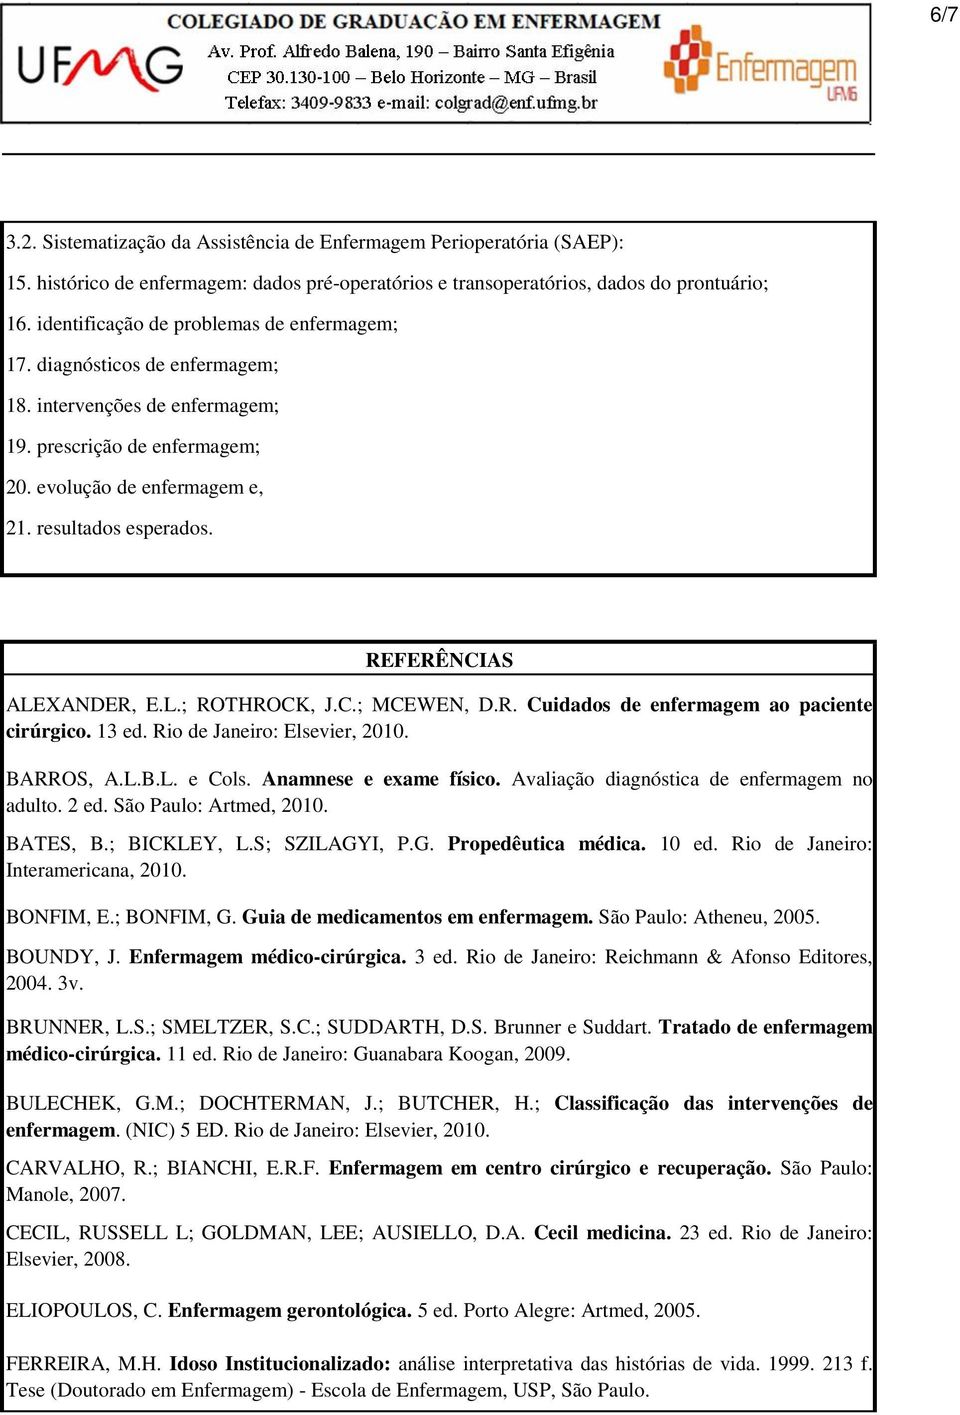 REFERÊNCIAS ALEXANDER, E.L.; ROTHROCK, J.C.; MCEWEN, D.R. Cuidados de enfermagem ao paciente cirúrgico. 13 ed. Rio de Janeiro: Elsevier, 2010. BARROS, A.L.B.L. e Cols. Anamnese e exame físico.